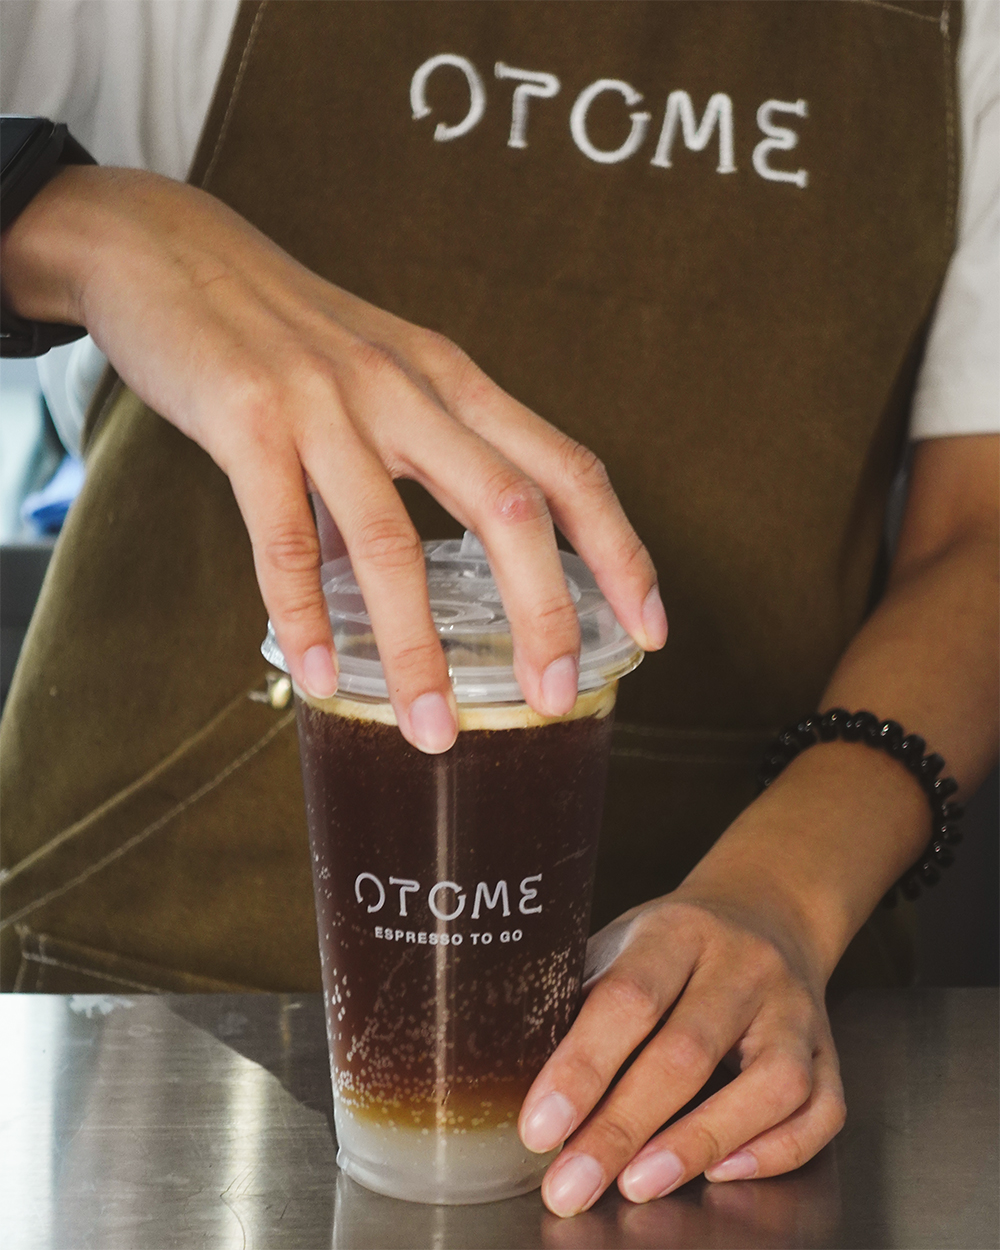 「OTOME Café」提供兩種焙度之義式配方豆，包含果酸柔和的中焙，以及醇厚飽滿的中深焙